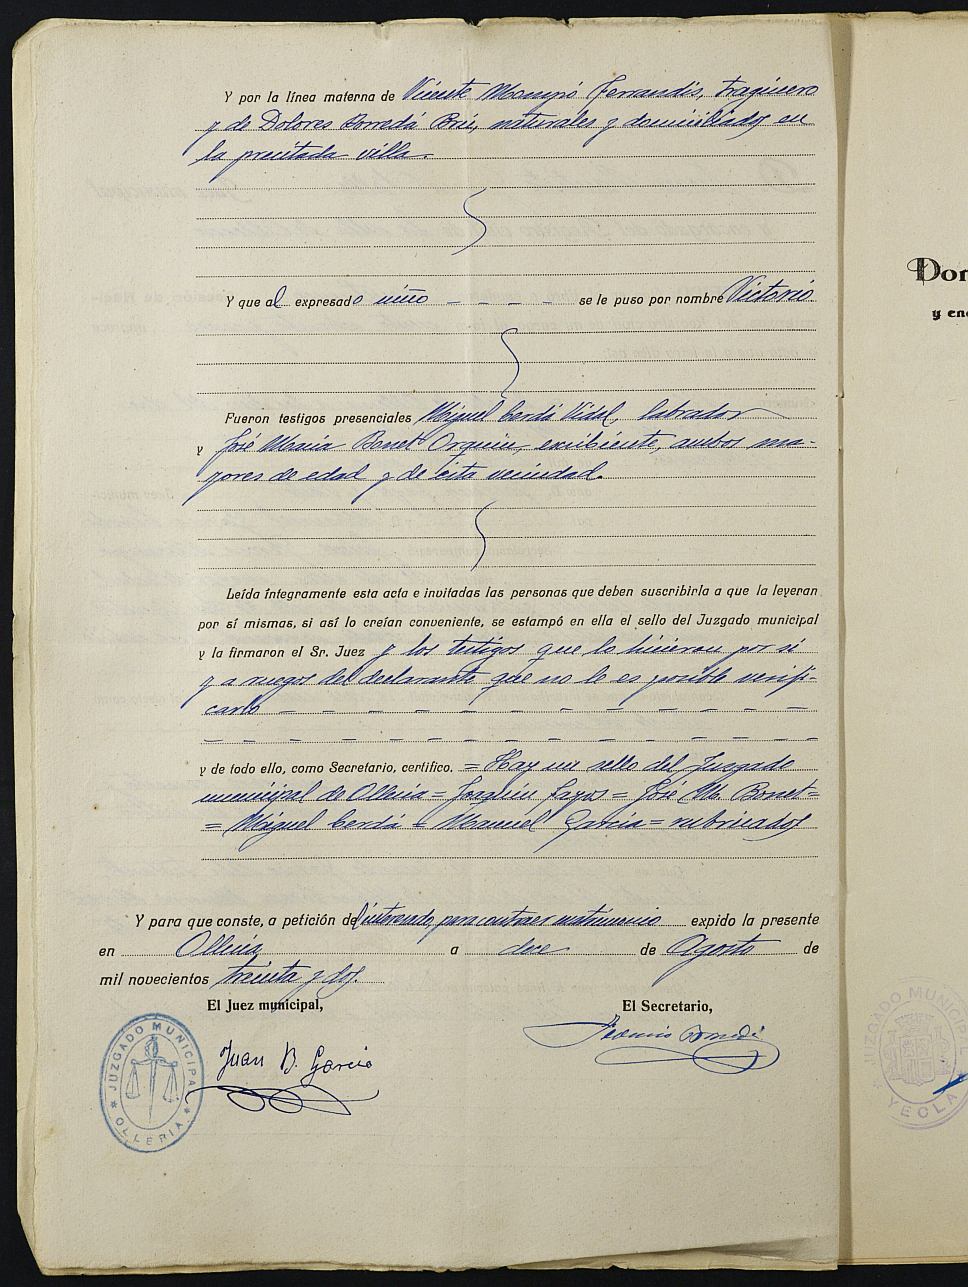 Expediente nº 2 para la inscripción de matrimonio civil en el Registro Civil de Yecla entre Victorio García Mompo y Josefa Albert Candela.